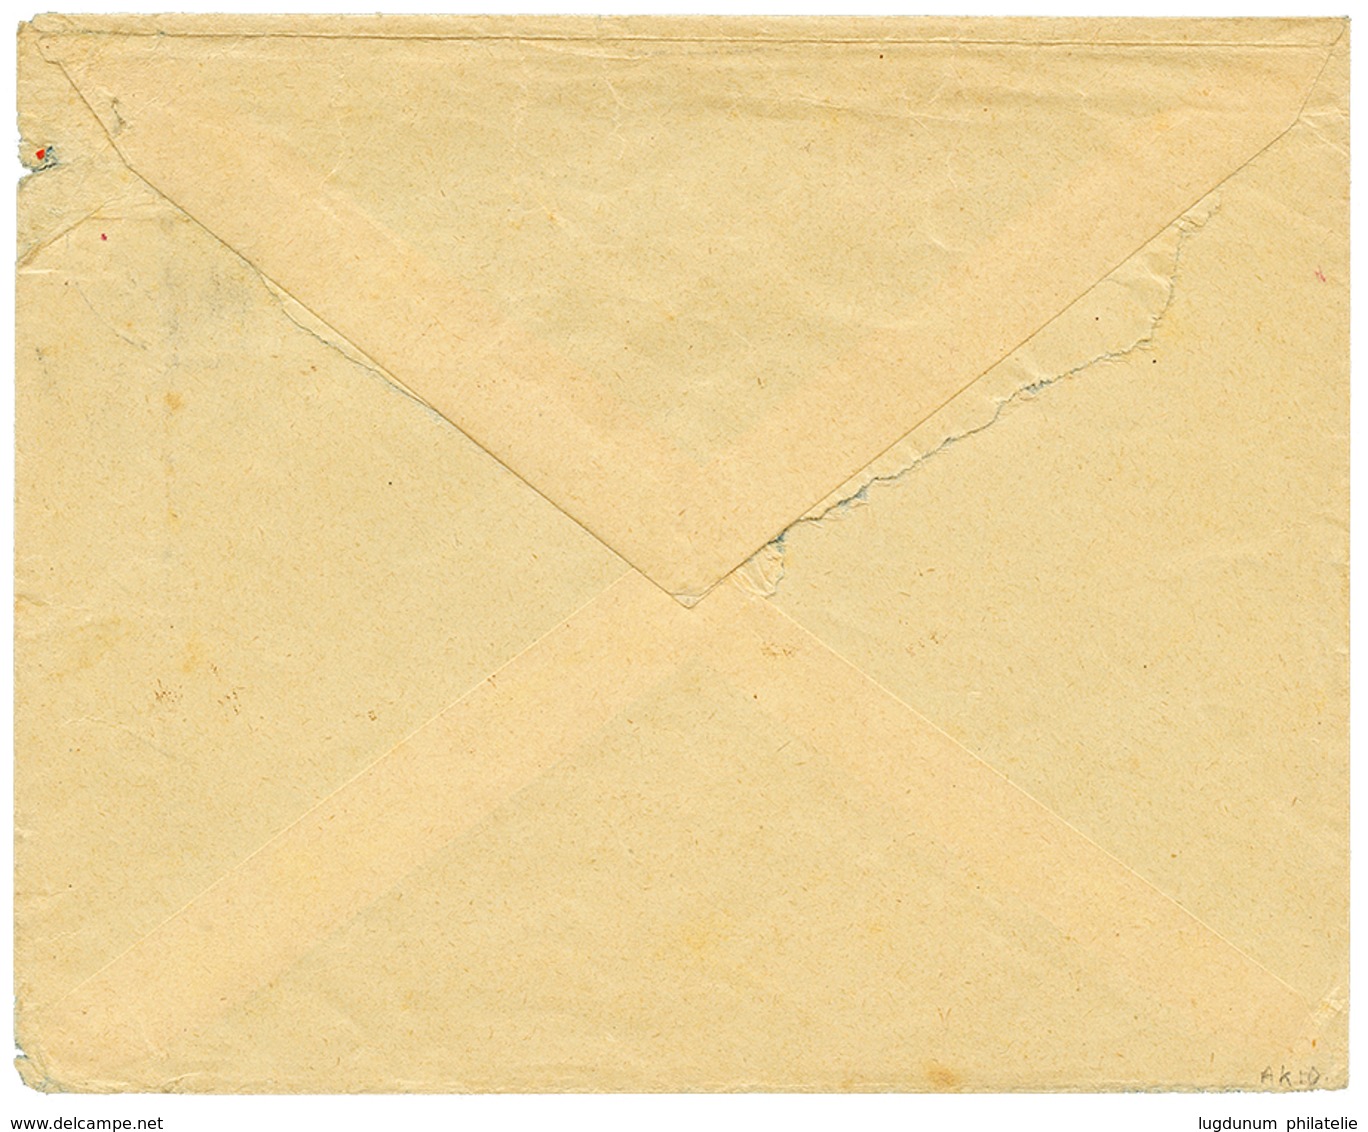 1910 4h(x2) Canc. TAVETA DEUTSCHE FELDPOST + Red Cachet ZENZUR PASSIERT DEUTSCH OSTAFRIKA On Envelope To BERLIN. Vf. - Afrique Orientale